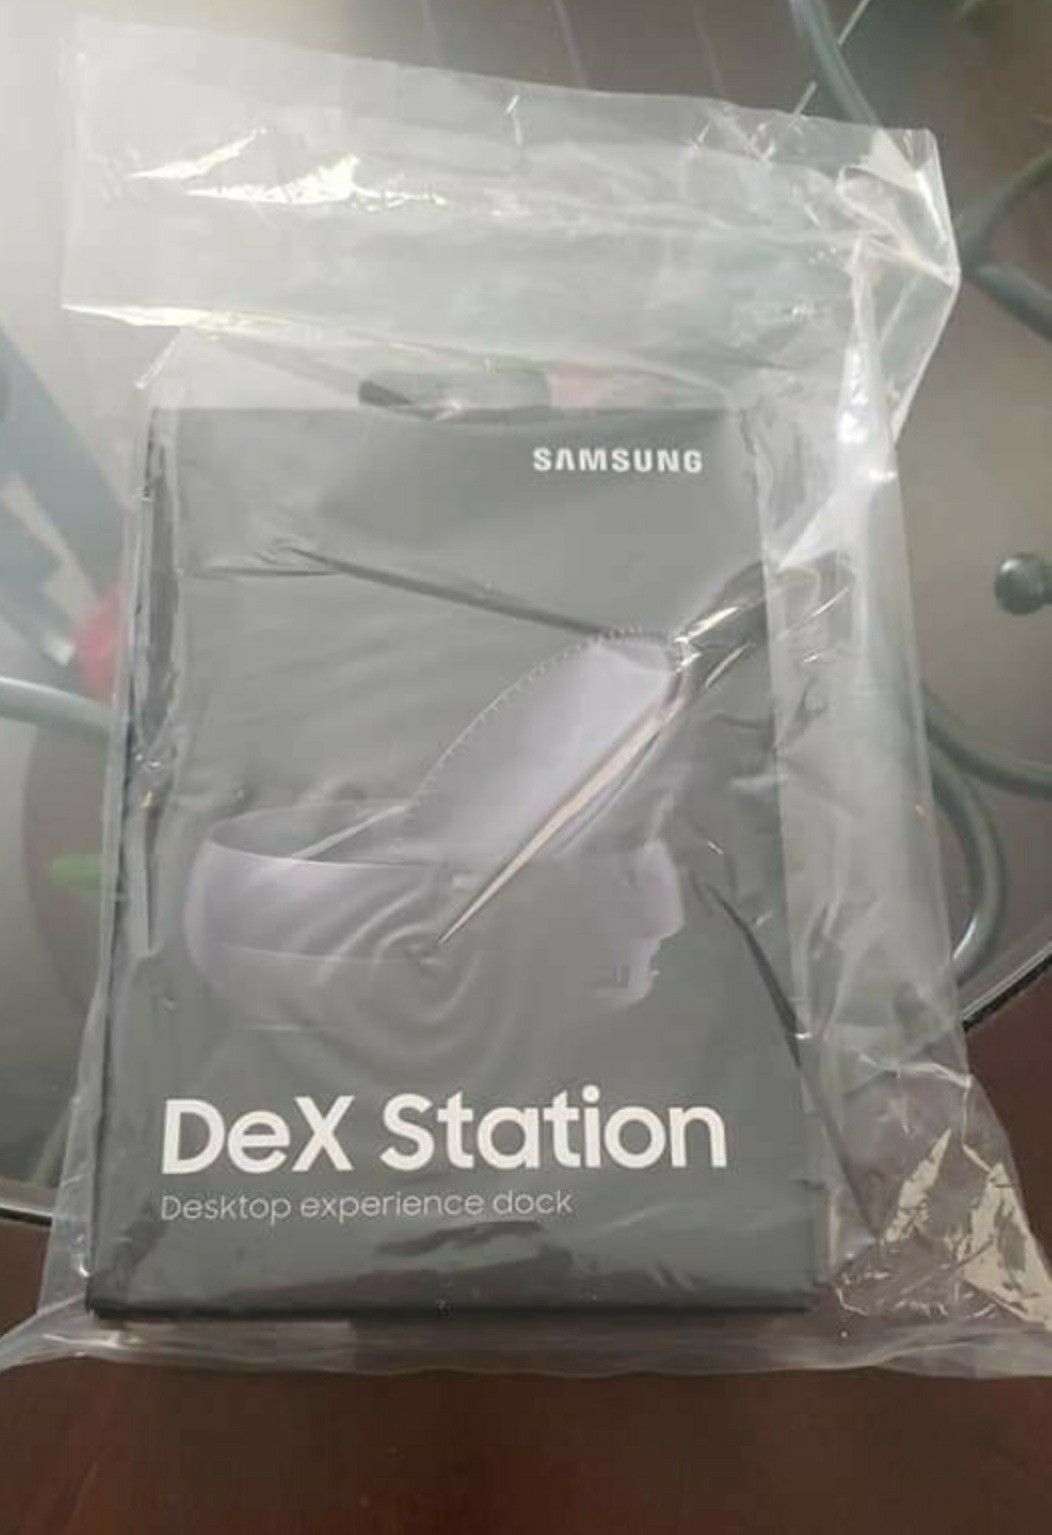 Samsung DeX Station